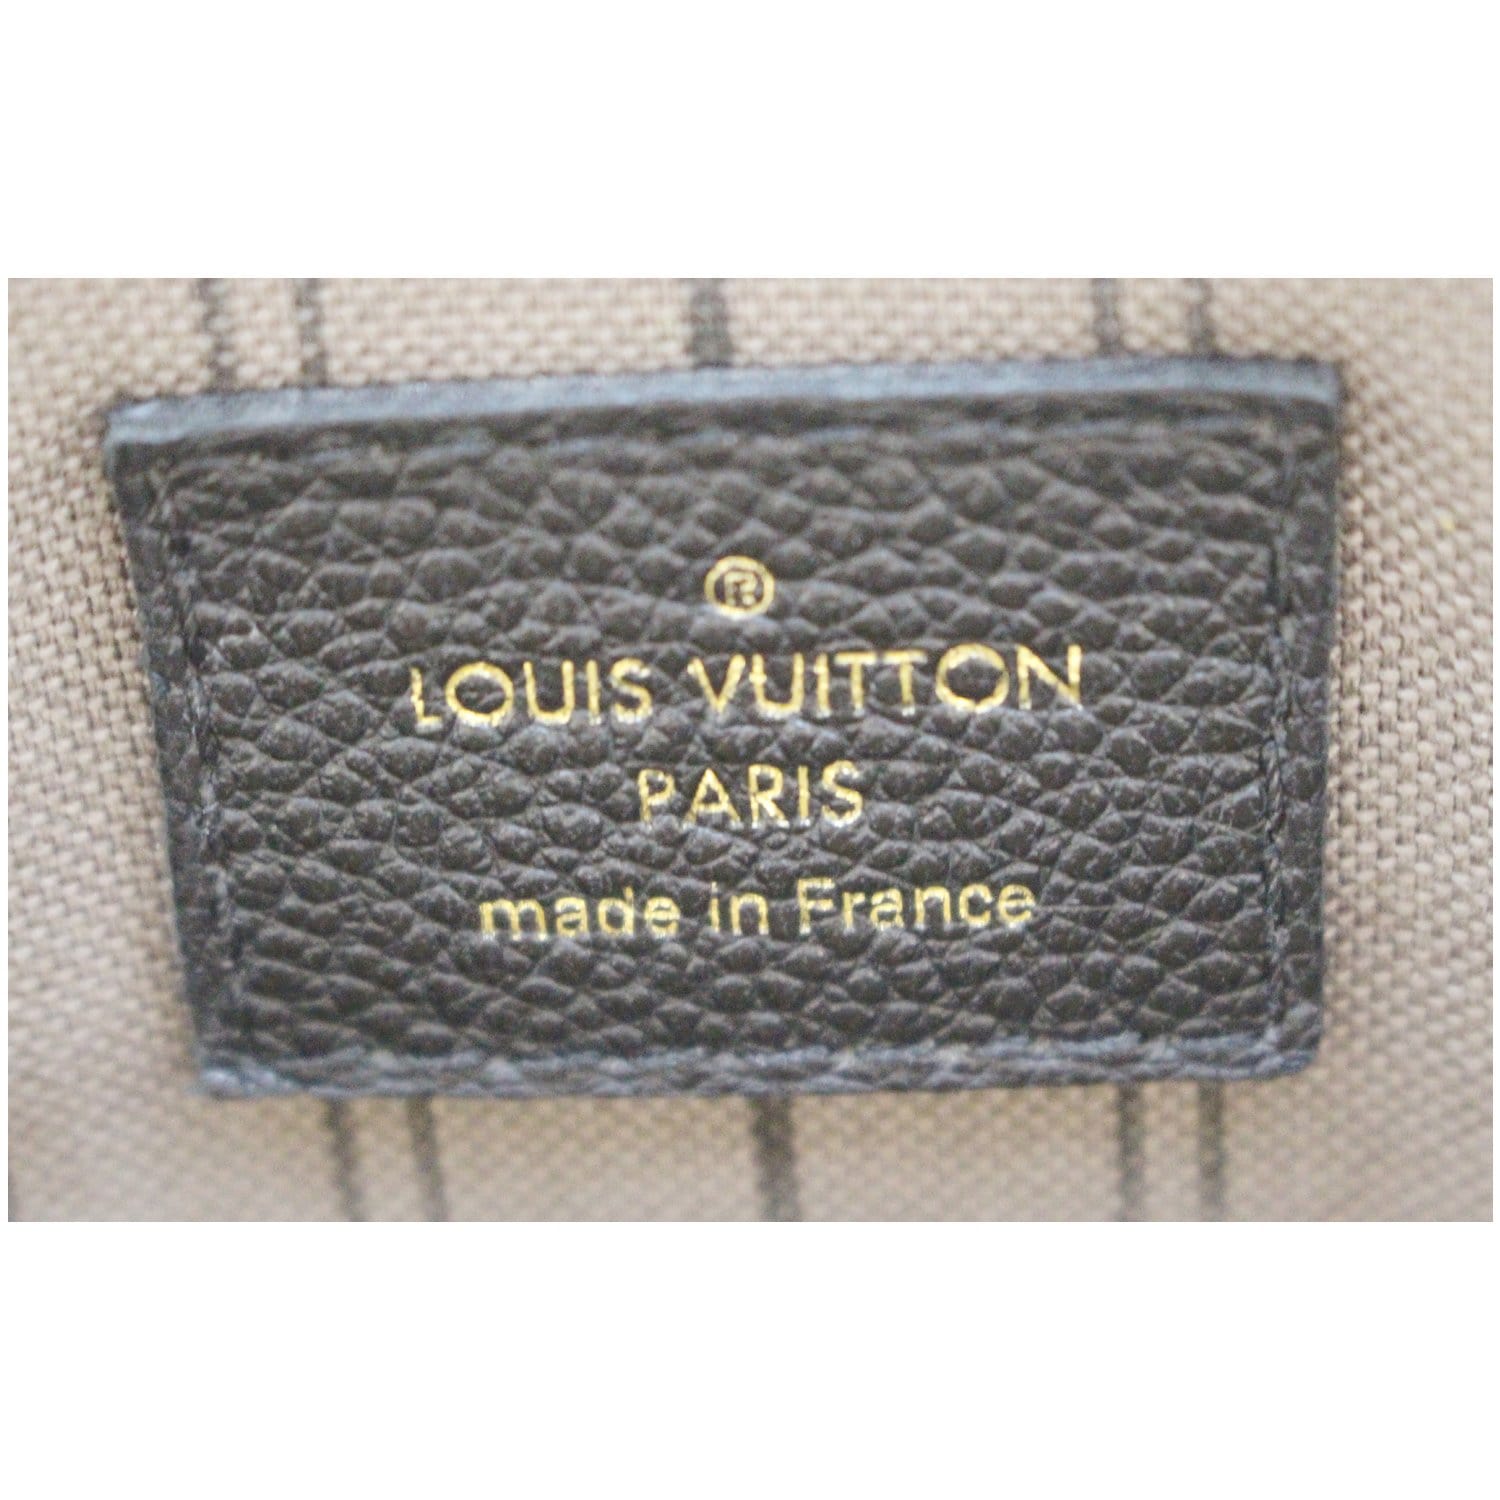 Louis Vuitton Monogram Empreinte Leather Noir Bastille MM Bag